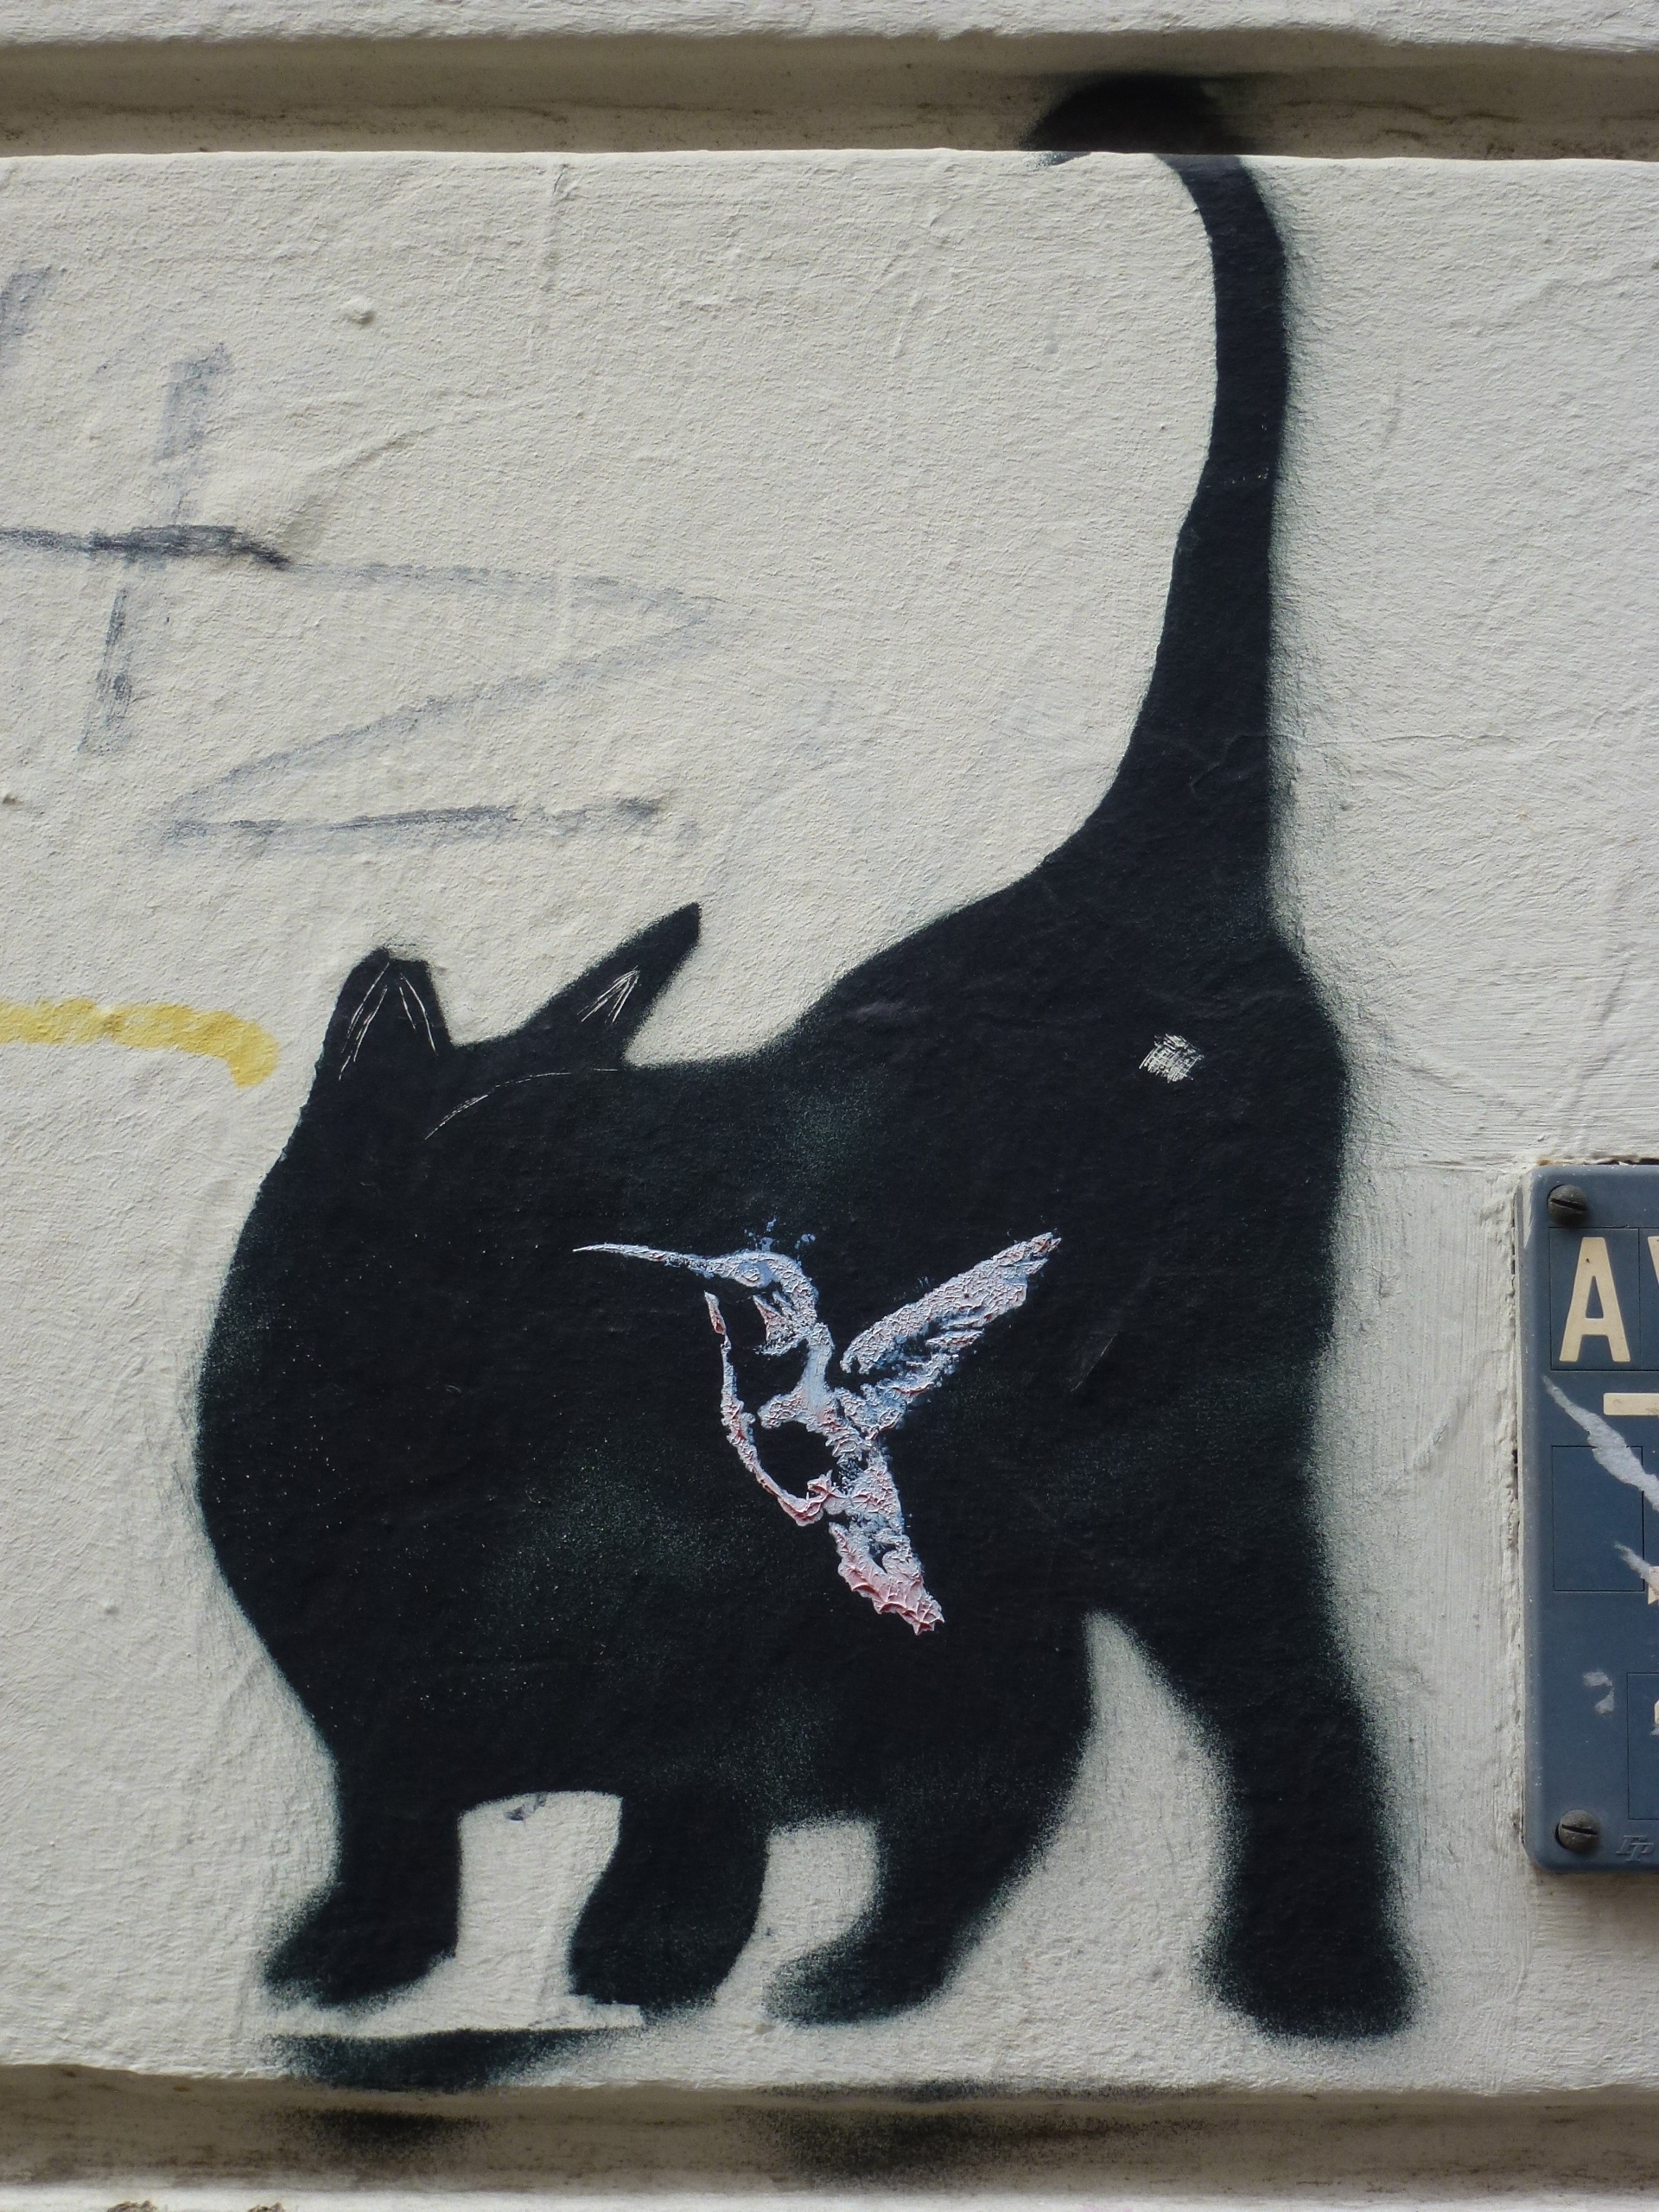 Stencil gegenüber der "Roten Flora": Katzen-Silhouette mit Kolibri